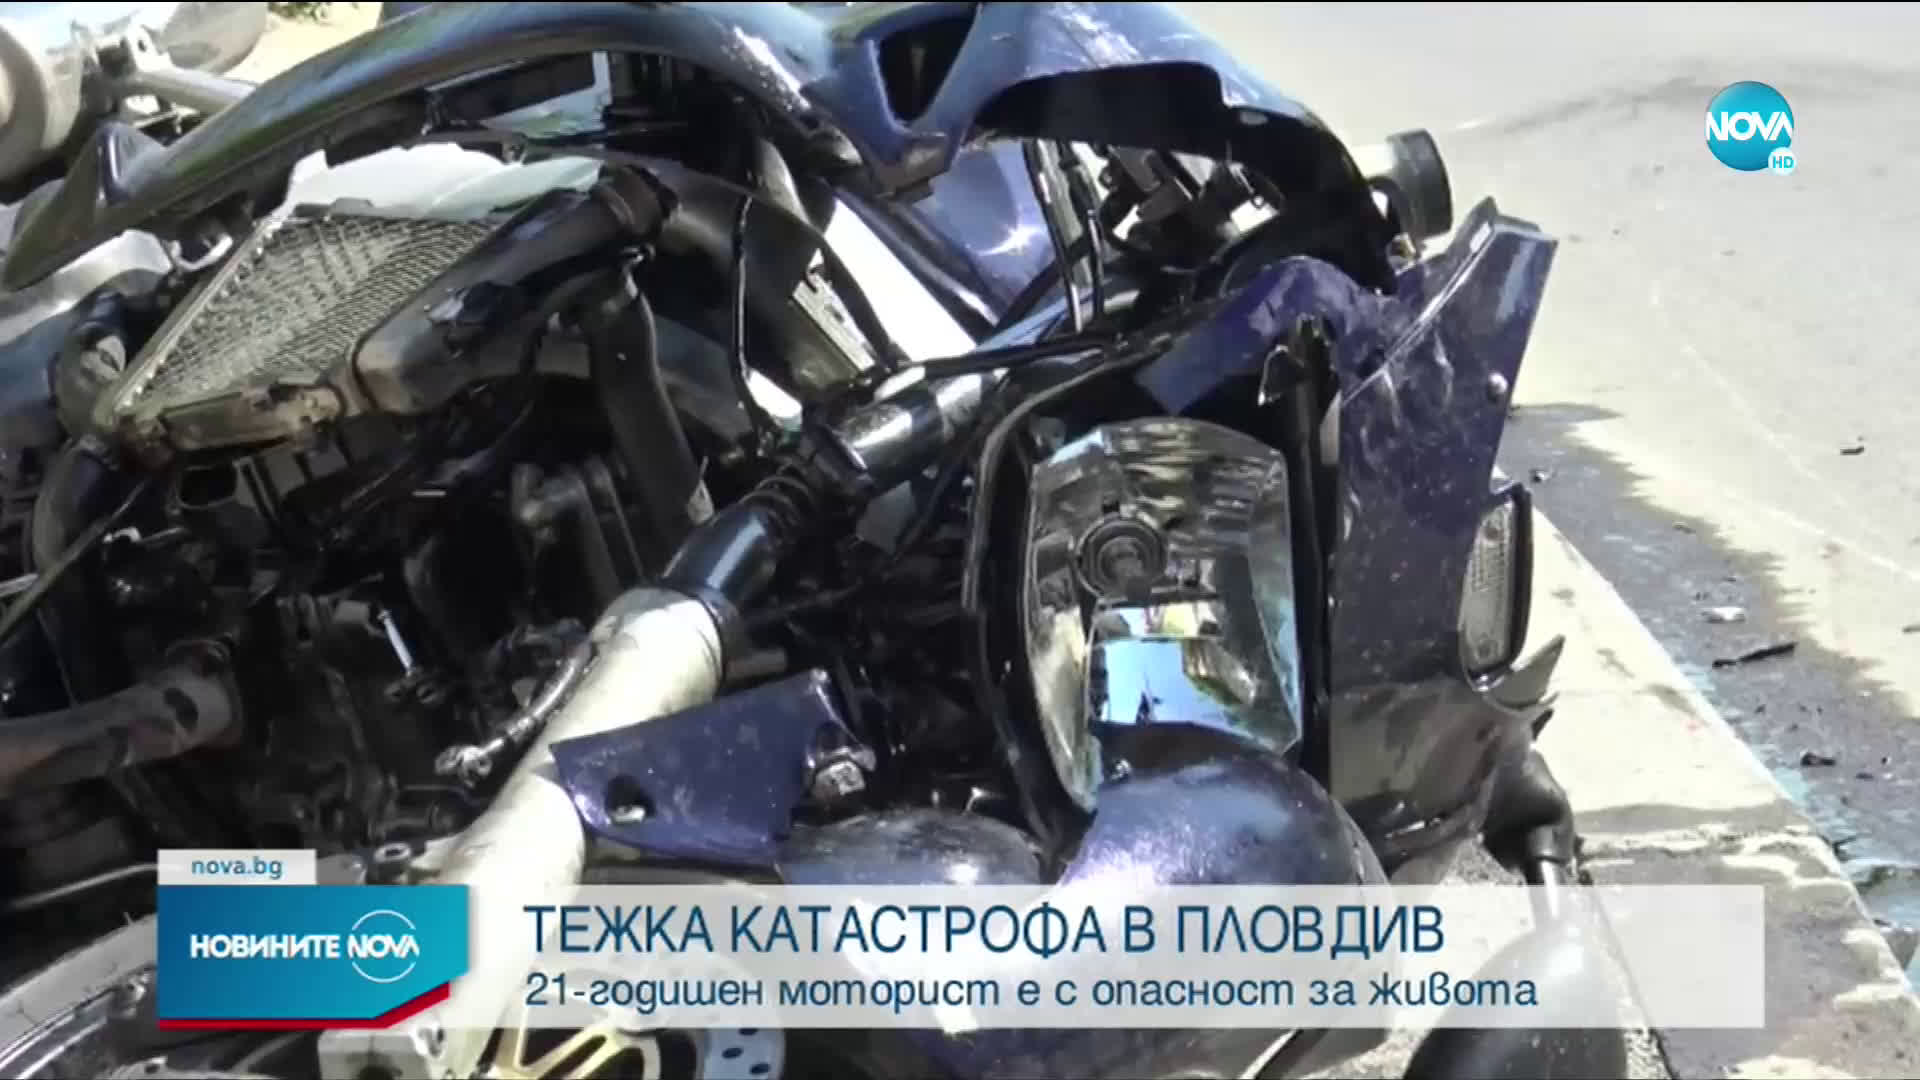 Моторист е с опасност за живота след тежка катастрофа в Пловдив